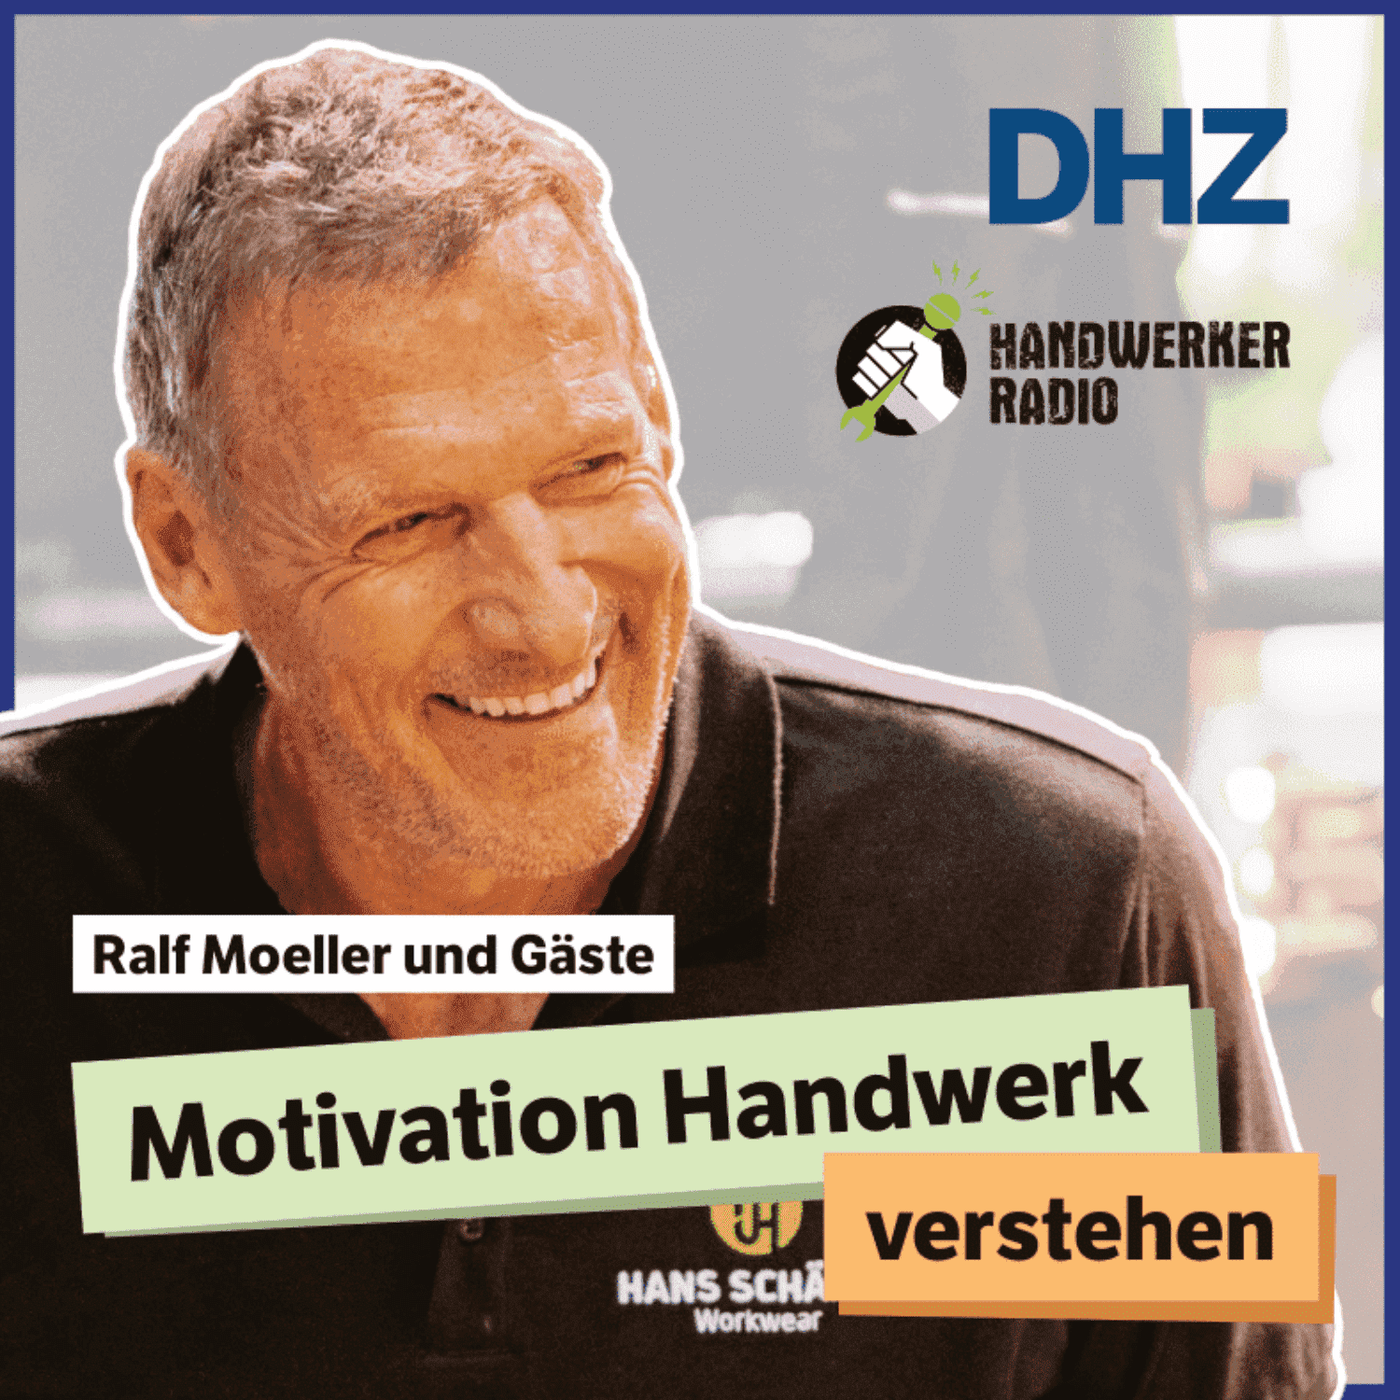 Motivation Handwerk verstehen – mit Ralf Moeller